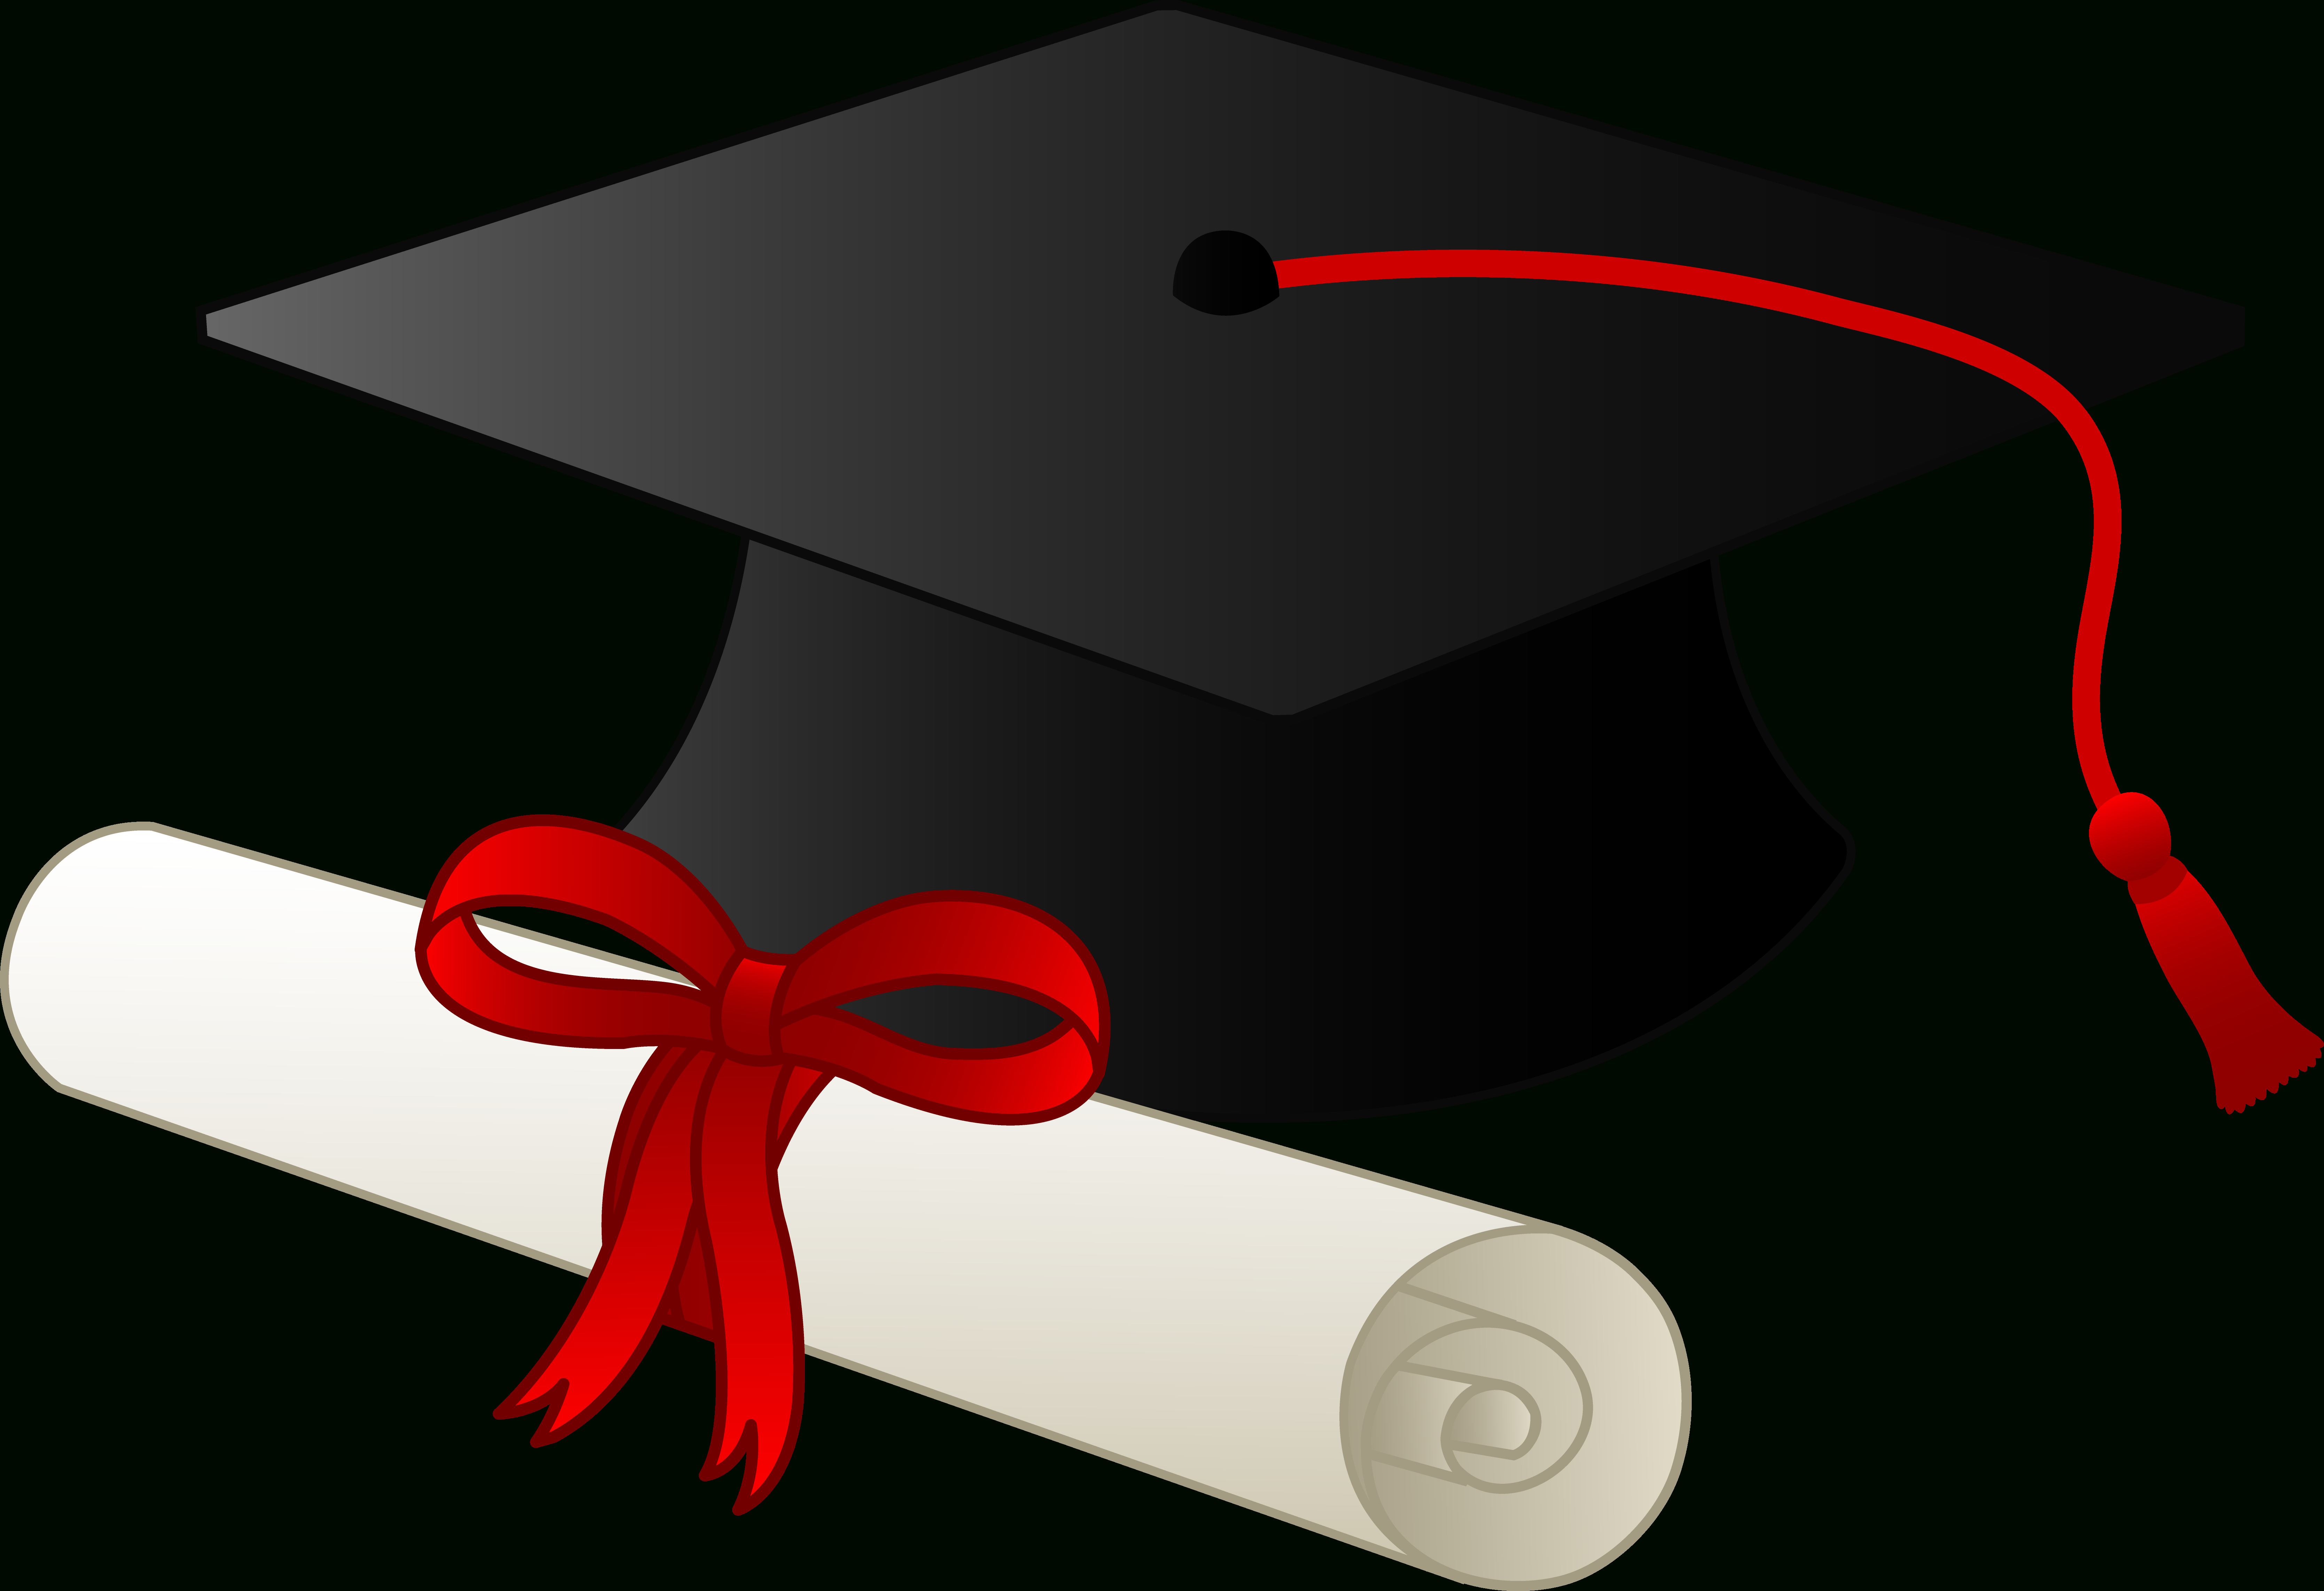 Graduation Clip Art Borders | Graduation Cap And Diploma - Free Clip - Graduation Clip Art Free Printable